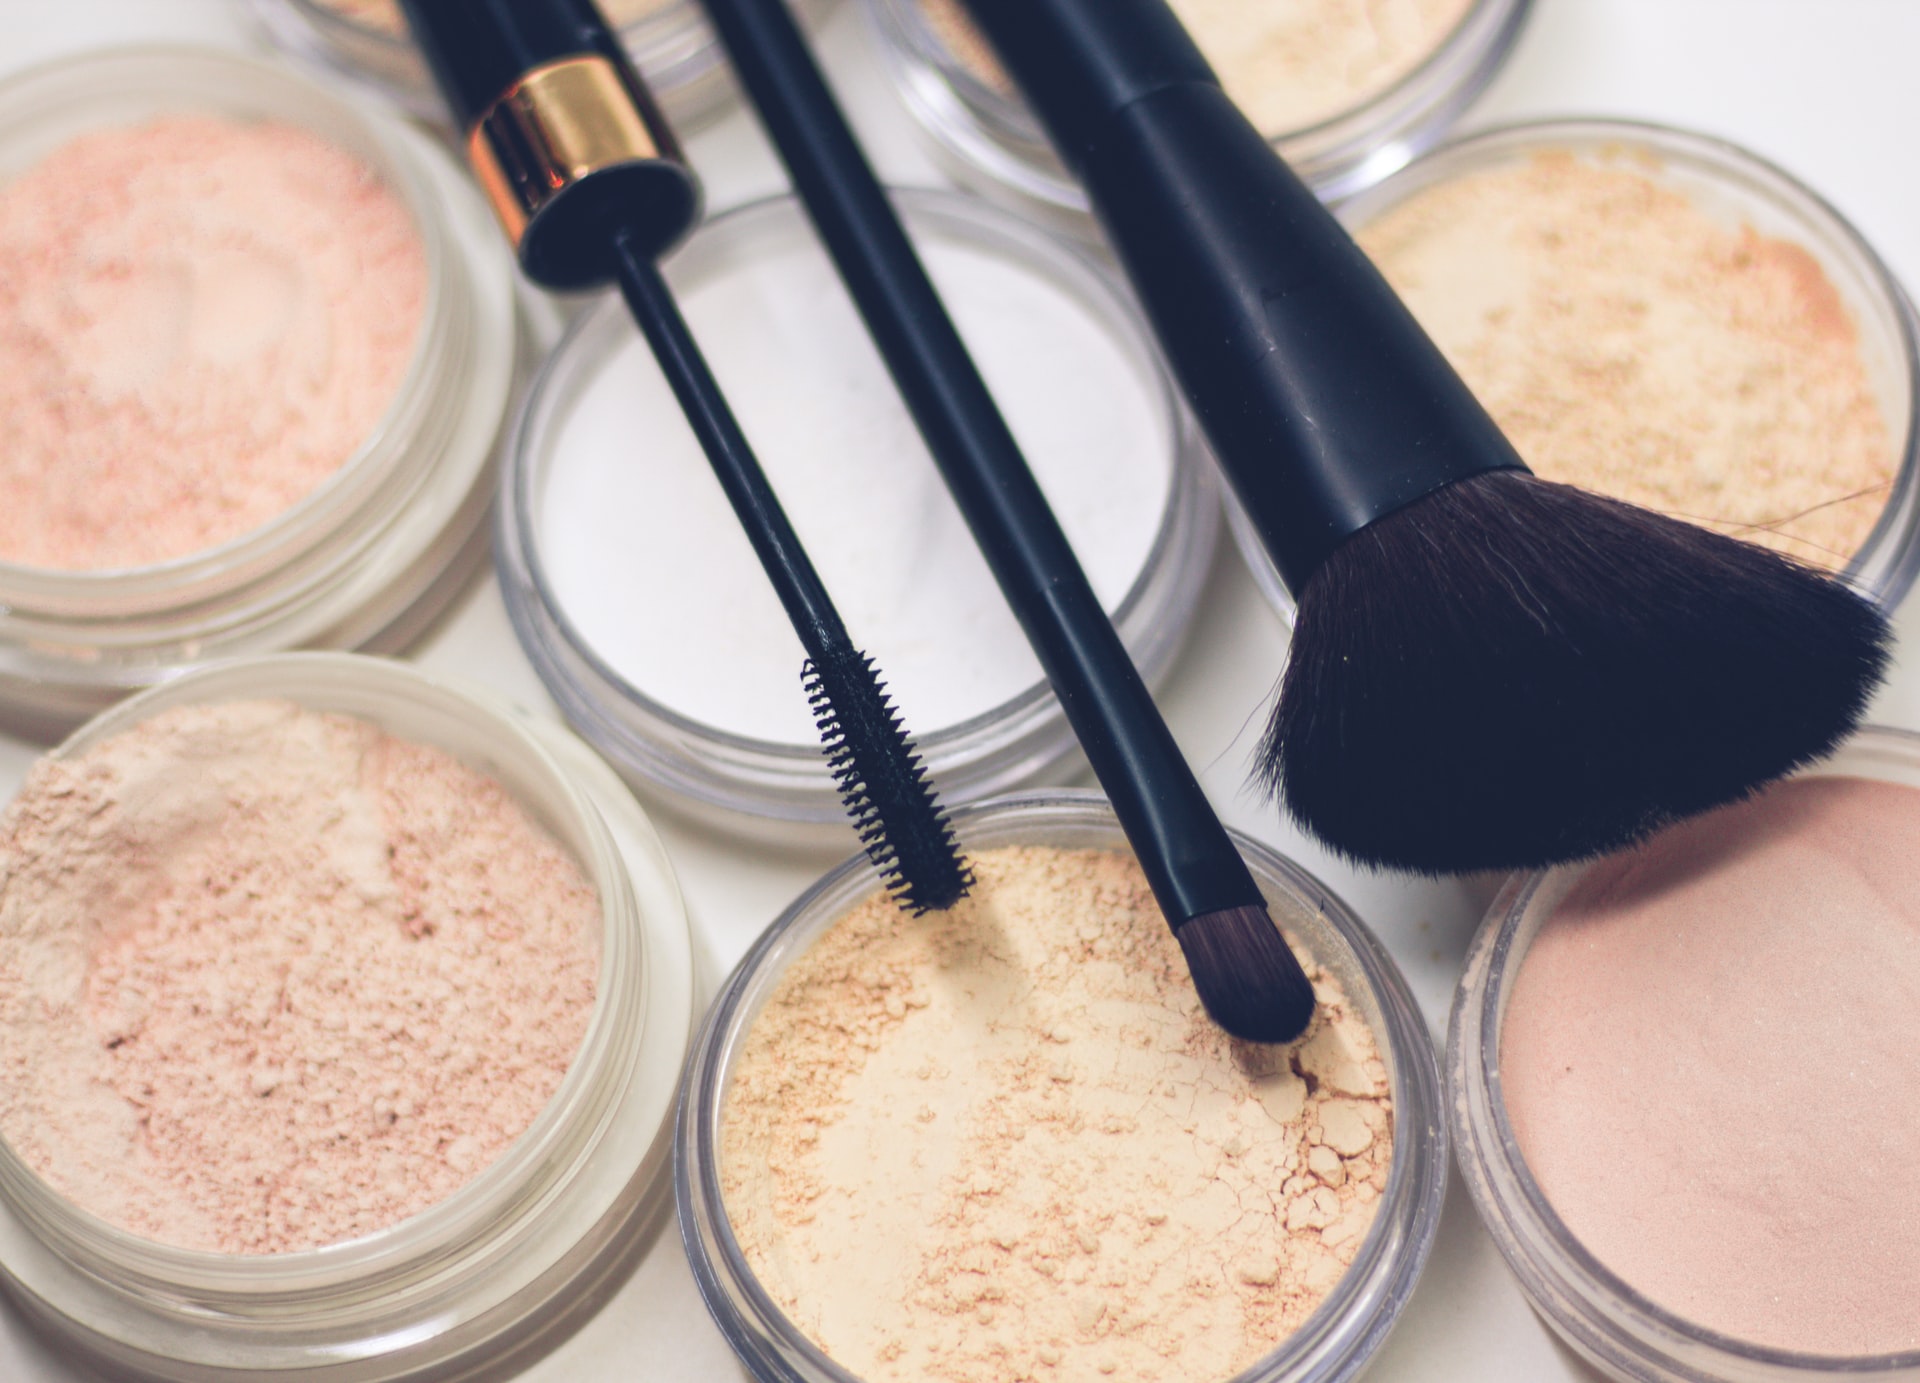 Make-up, brushes, tweazers, foundation, and mascara